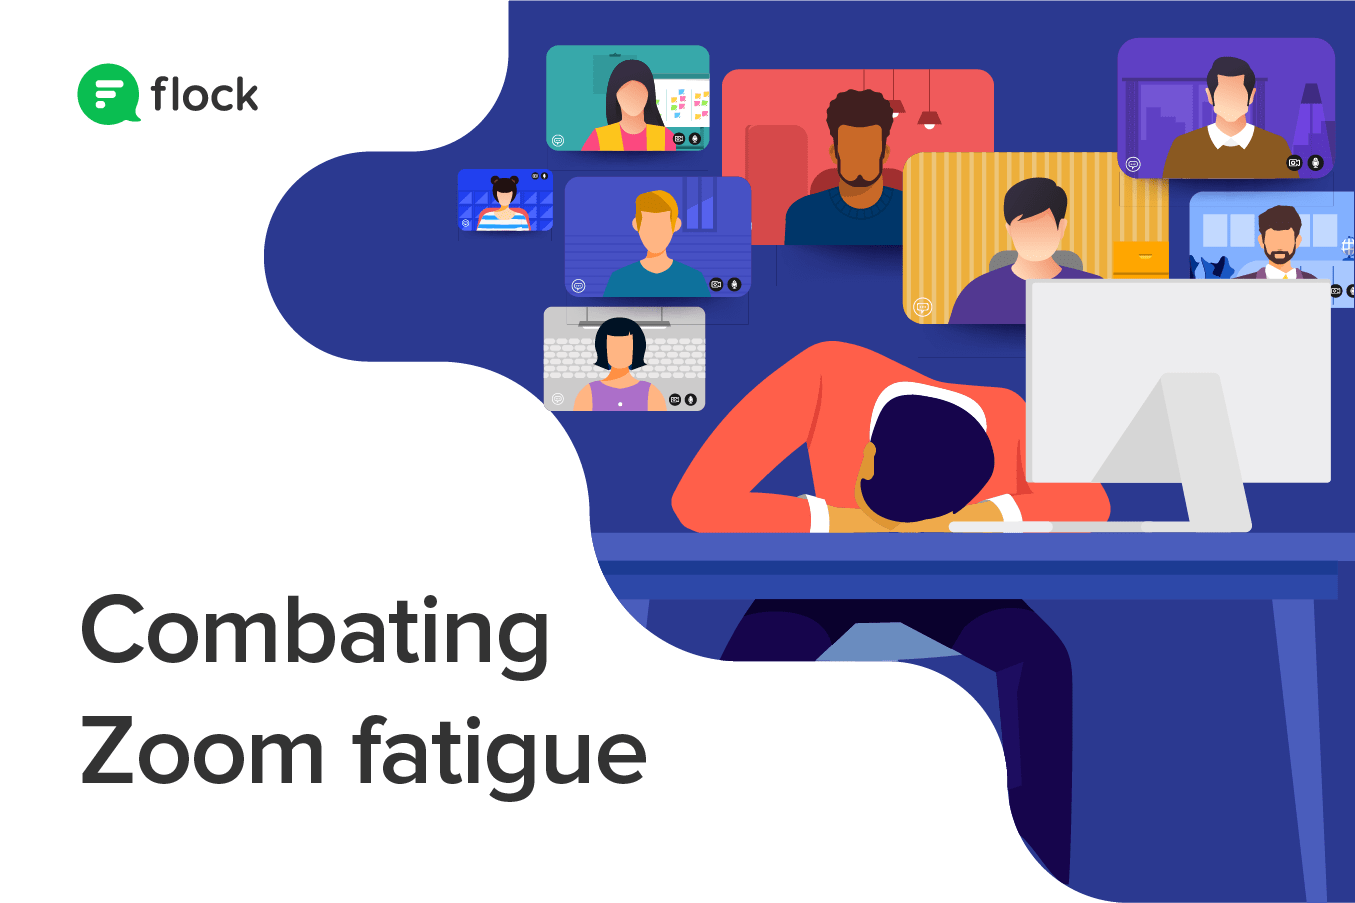 How to combat Zoom fatigue